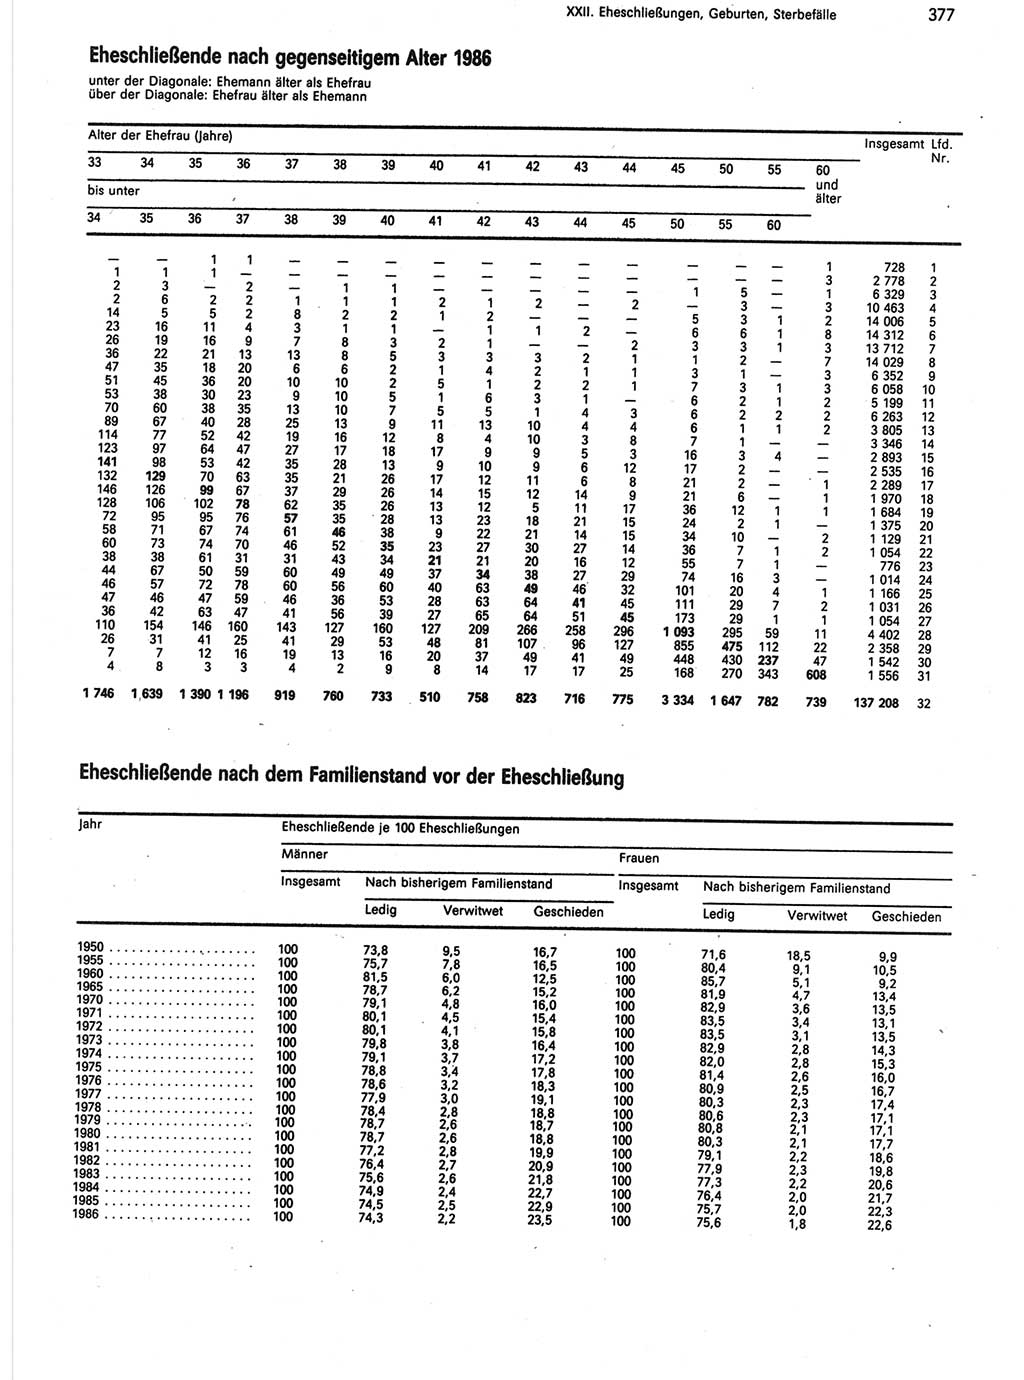 Statistisches Jahrbuch der Deutschen Demokratischen Republik (DDR) 1988, Seite 377 (Stat. Jb. DDR 1988, S. 377)